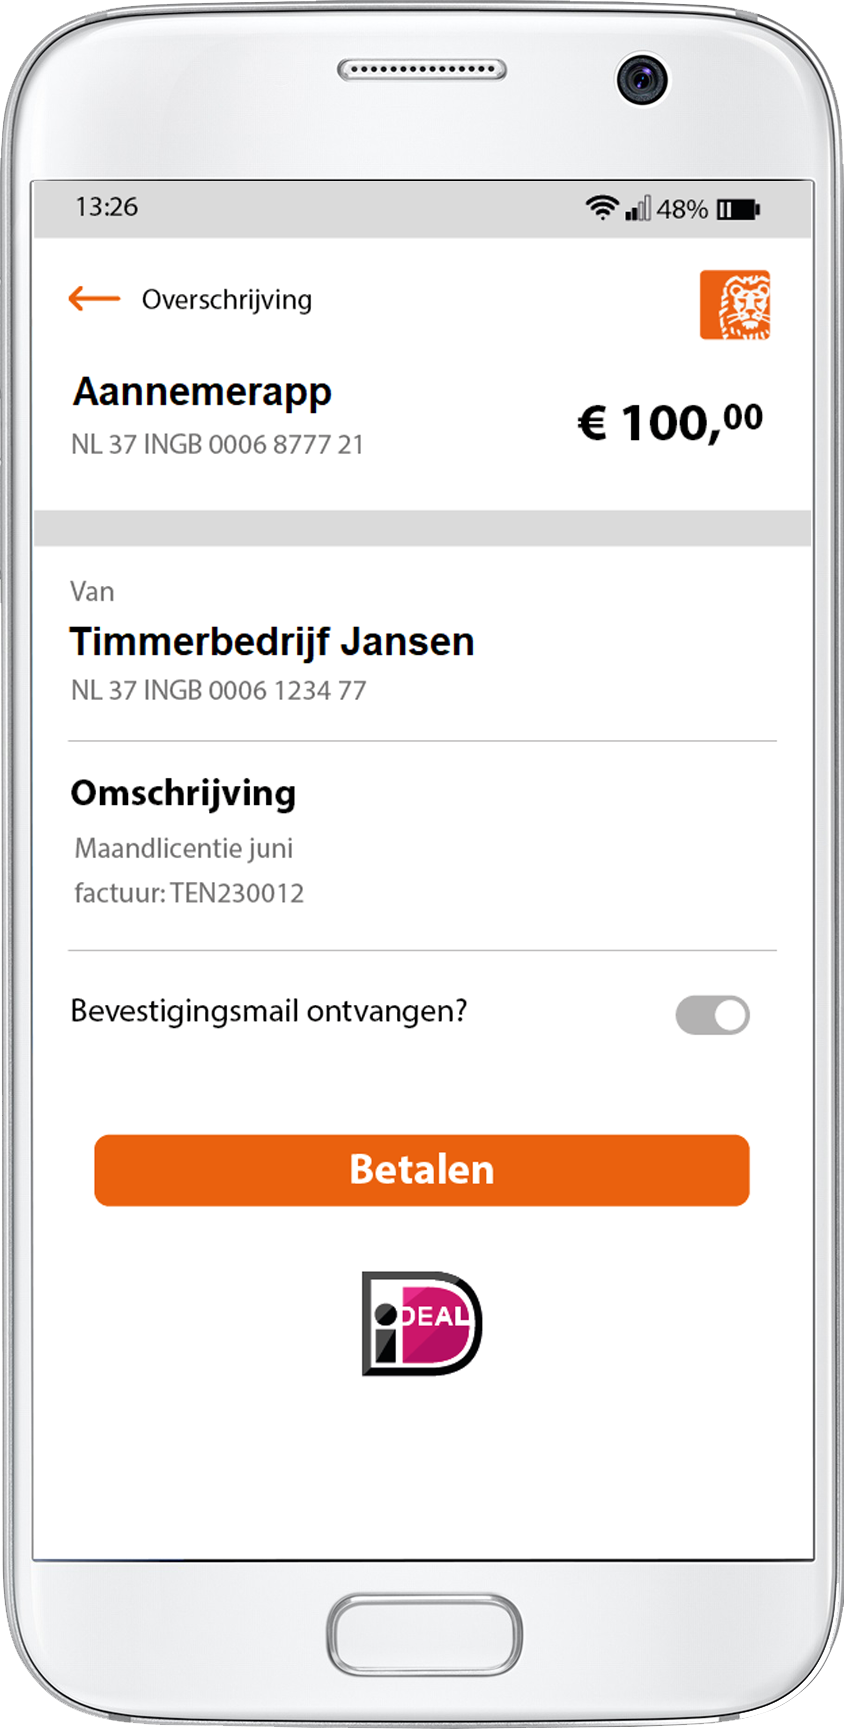 Aannemersapp betalen van appandweb.nl